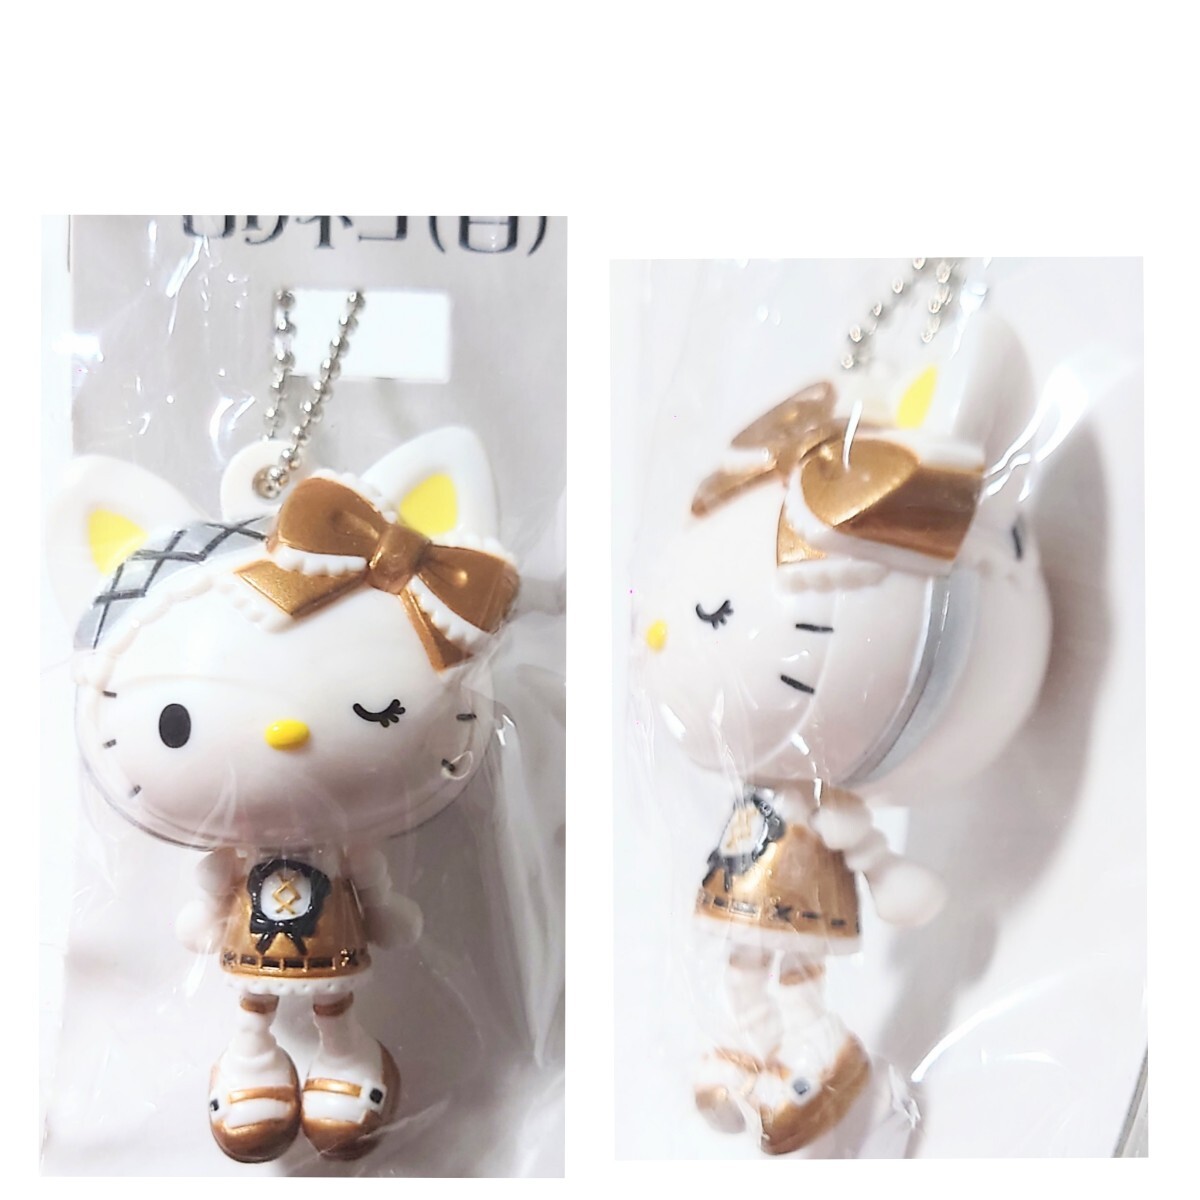  Shokugan Hello Kitty Hello Kitty..roli ball chain swing mascot Lolita rabbit cat Van p Gothic and Lolita gothic 2006 year 